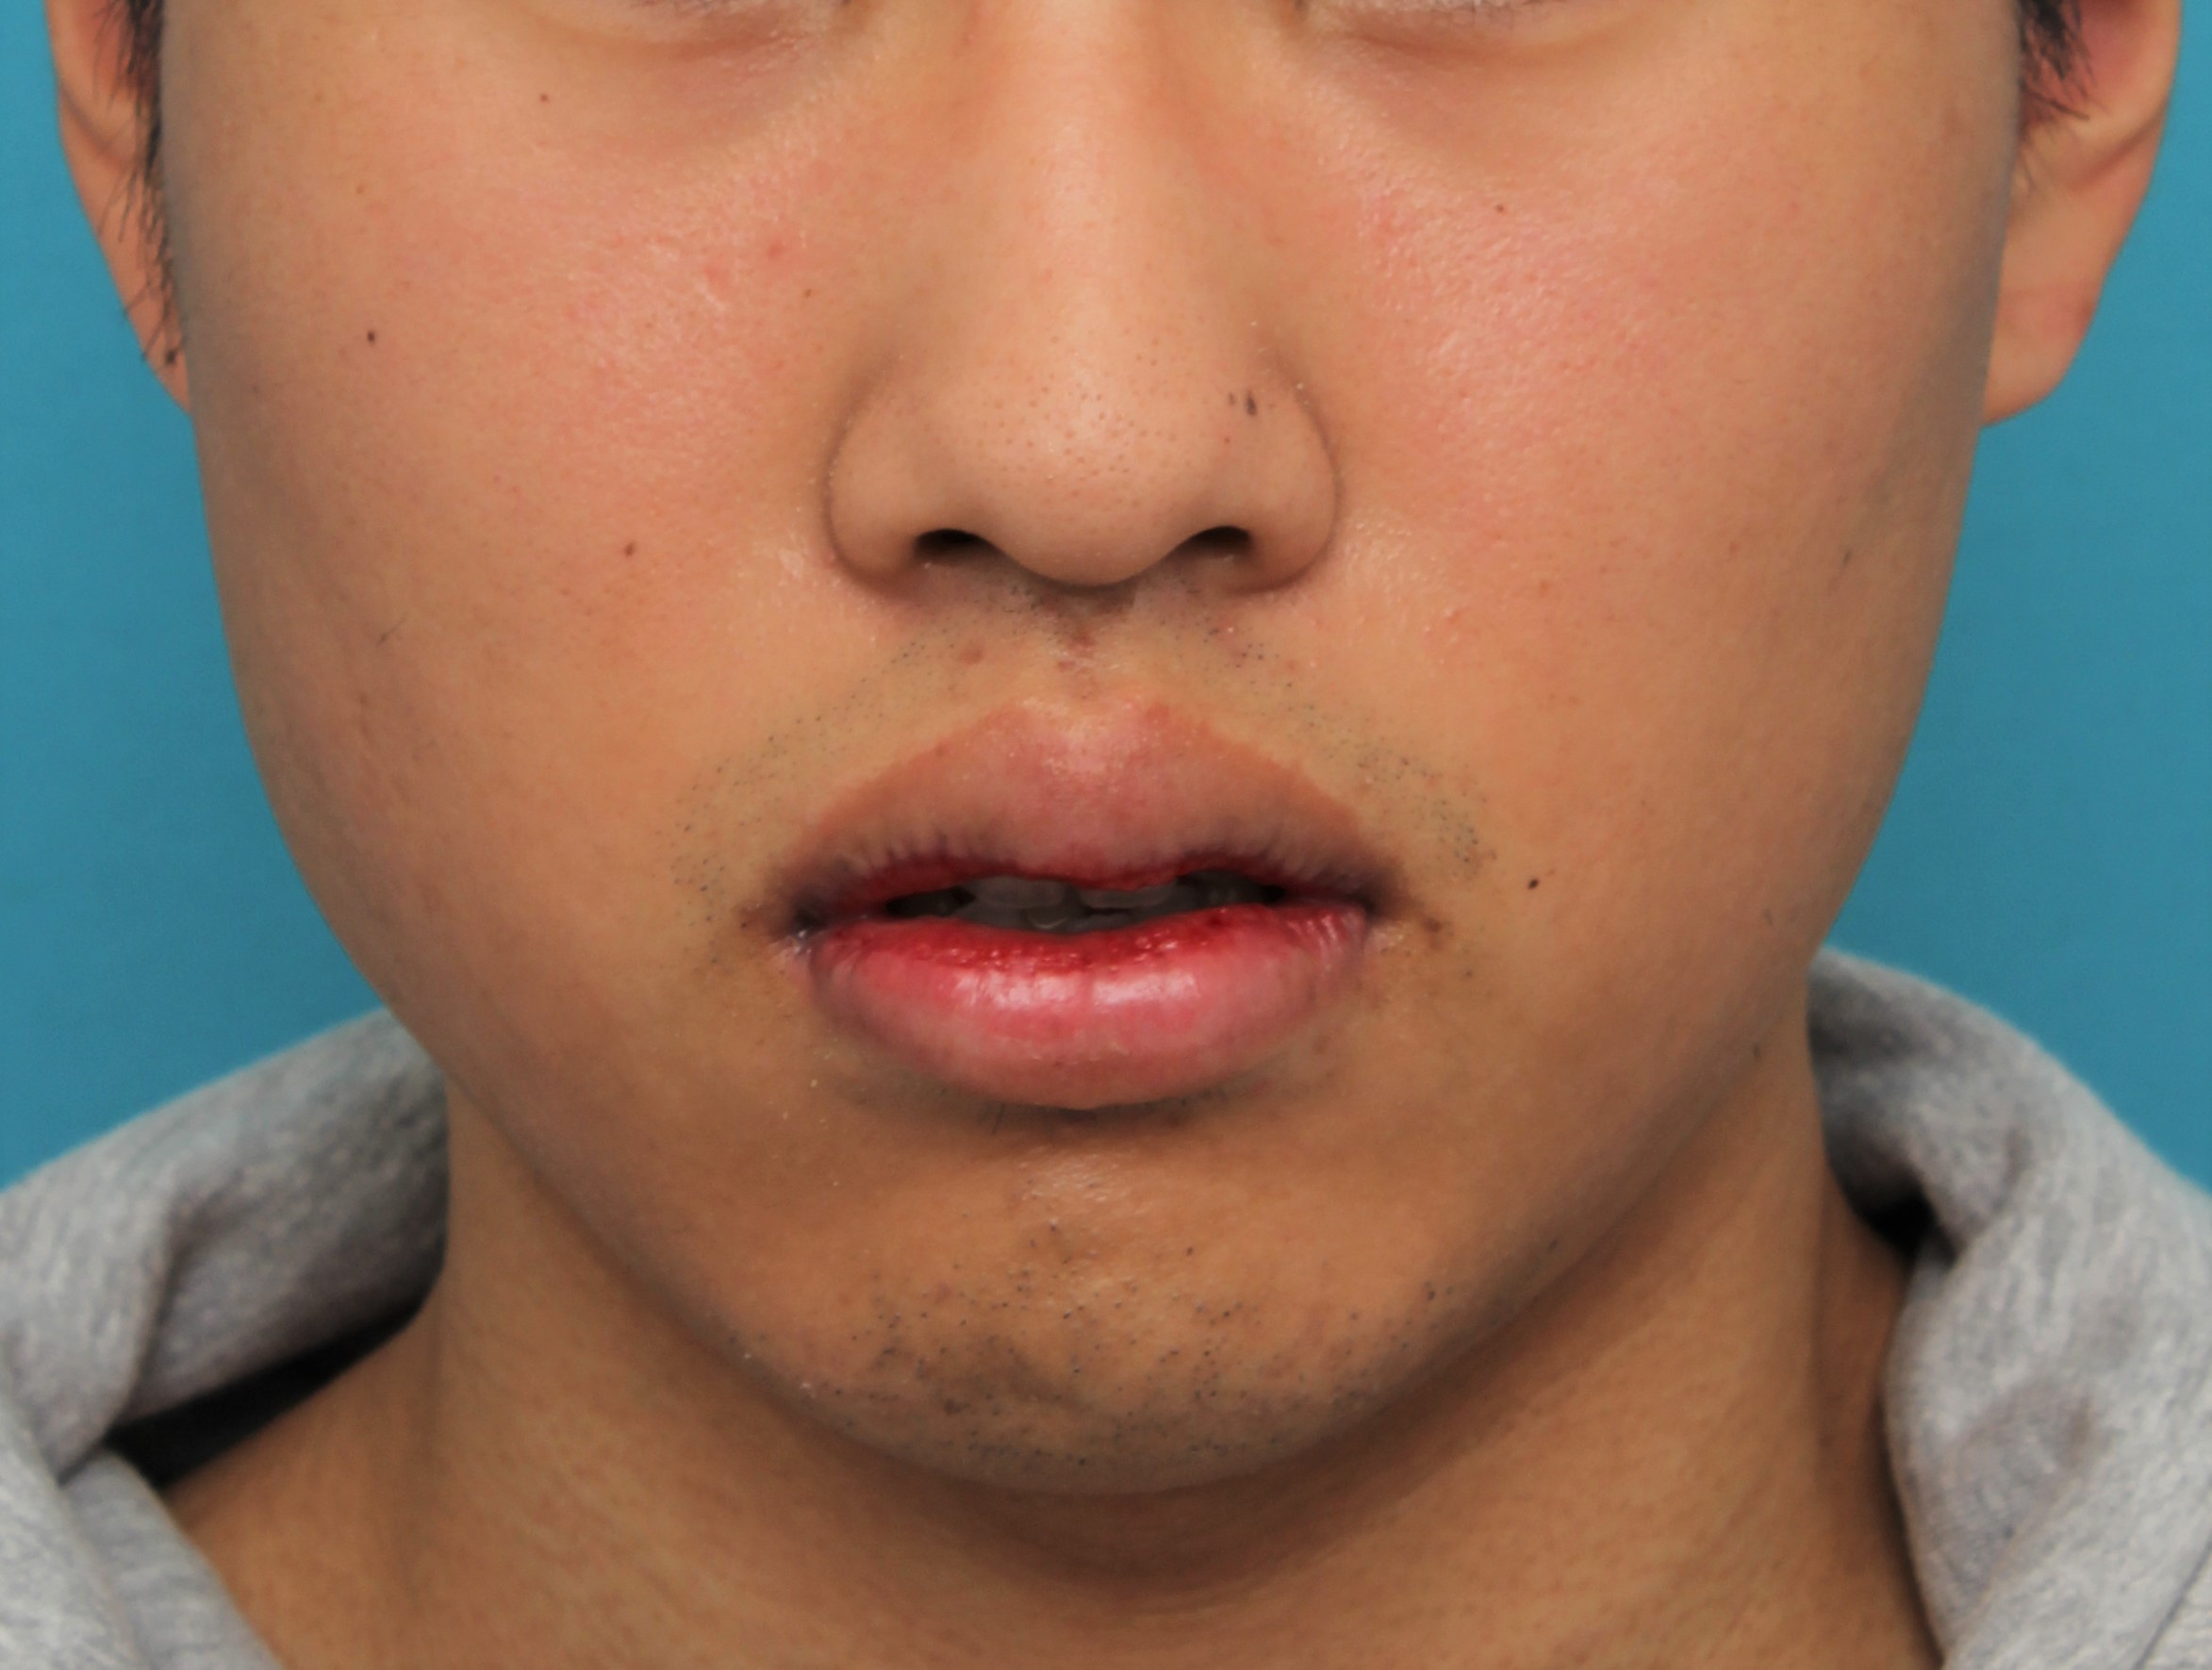 唇を薄く（口唇縮小術）,手術で上下の唇を薄くした20代男性の症例写真,8日後,口を半開きにした状態,mainpic_usuku017e.jpg